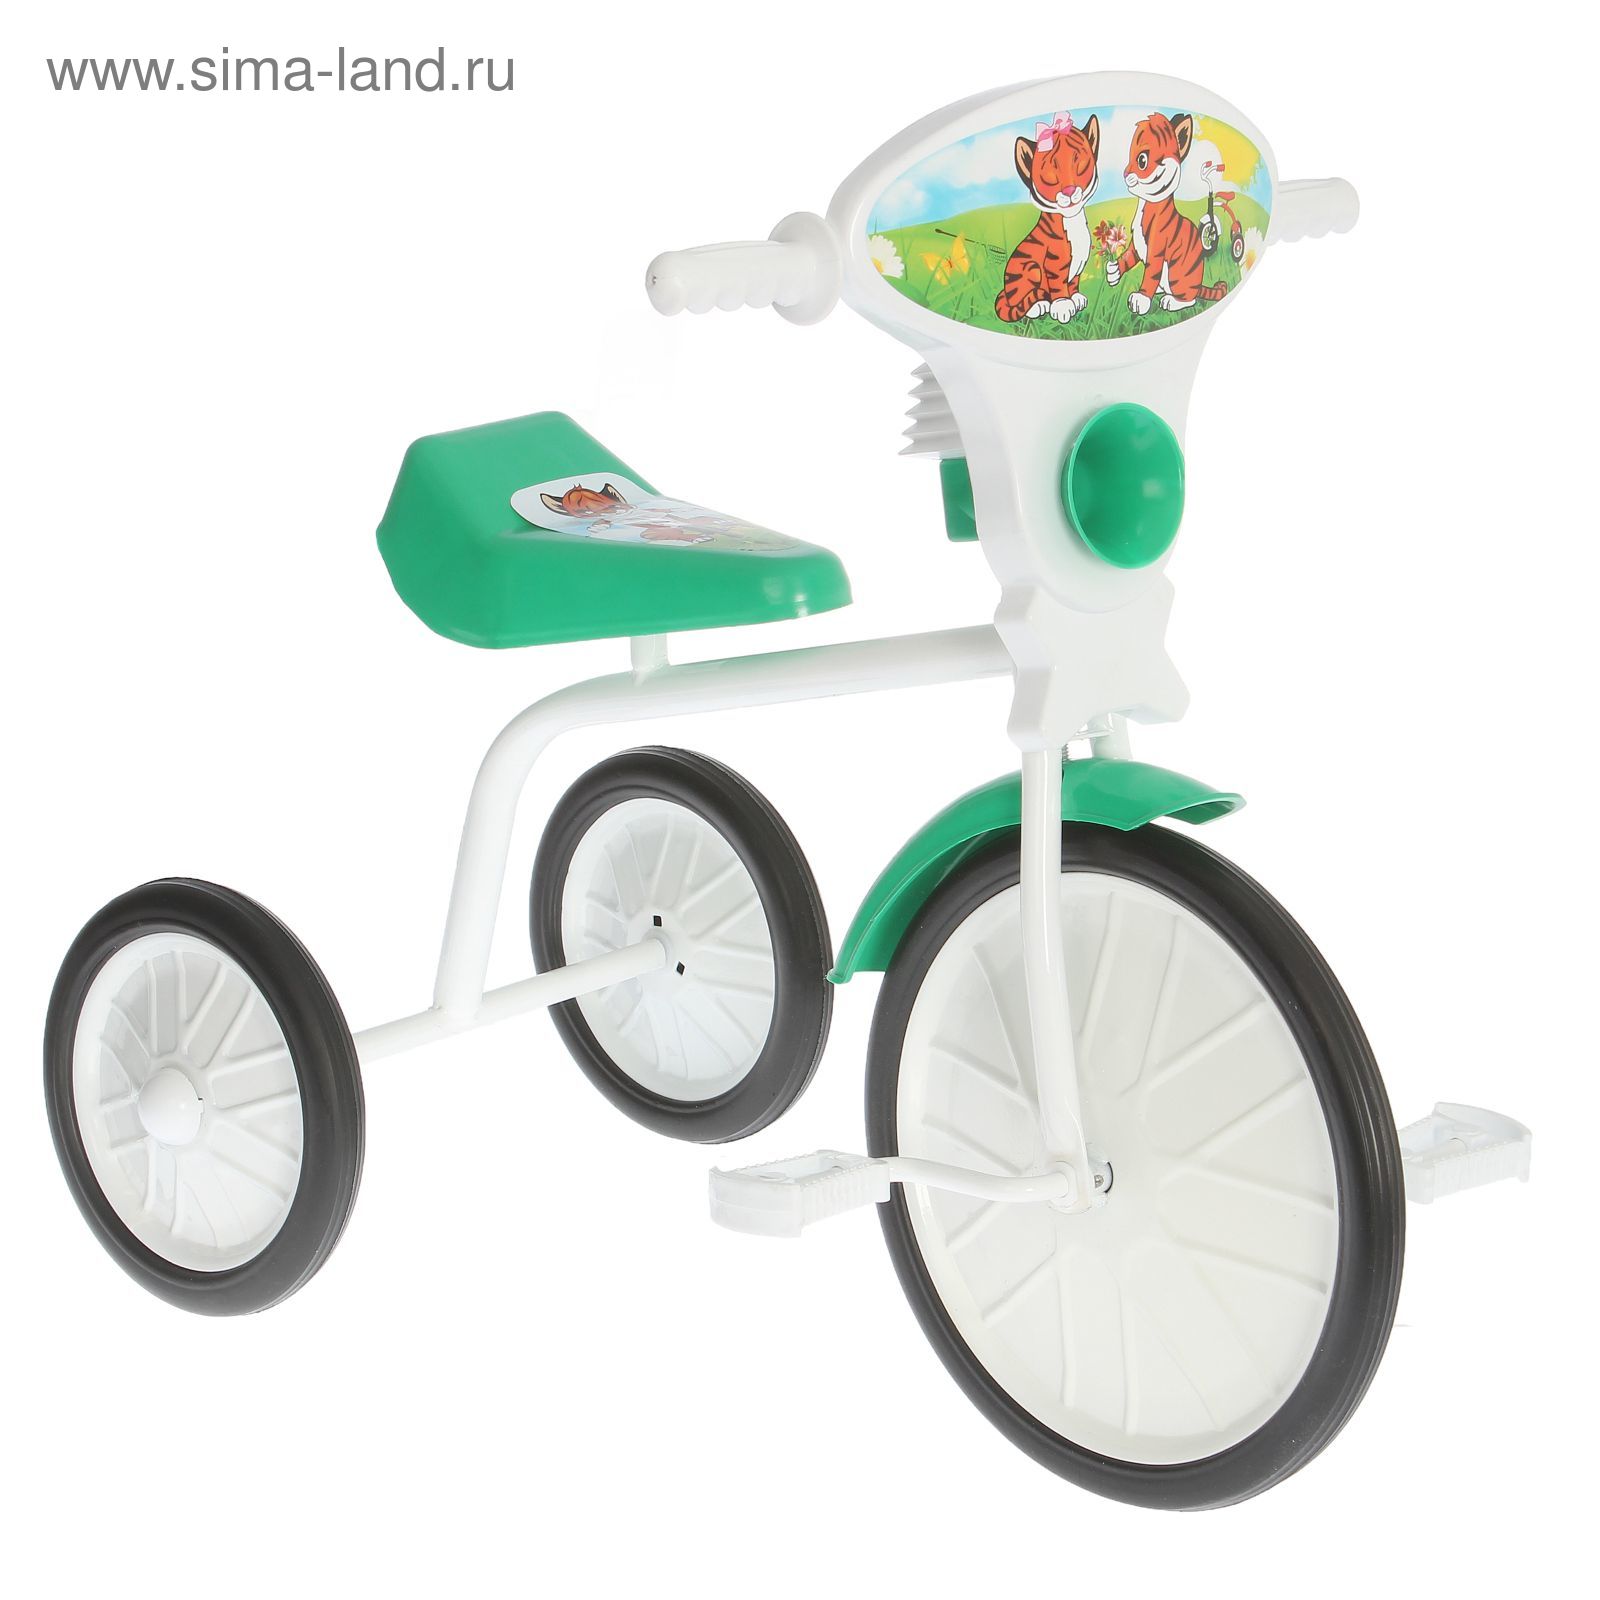 Велосипед трехколесный  "Малыш"  01, цвет зеленый, фасовка: 3шт.